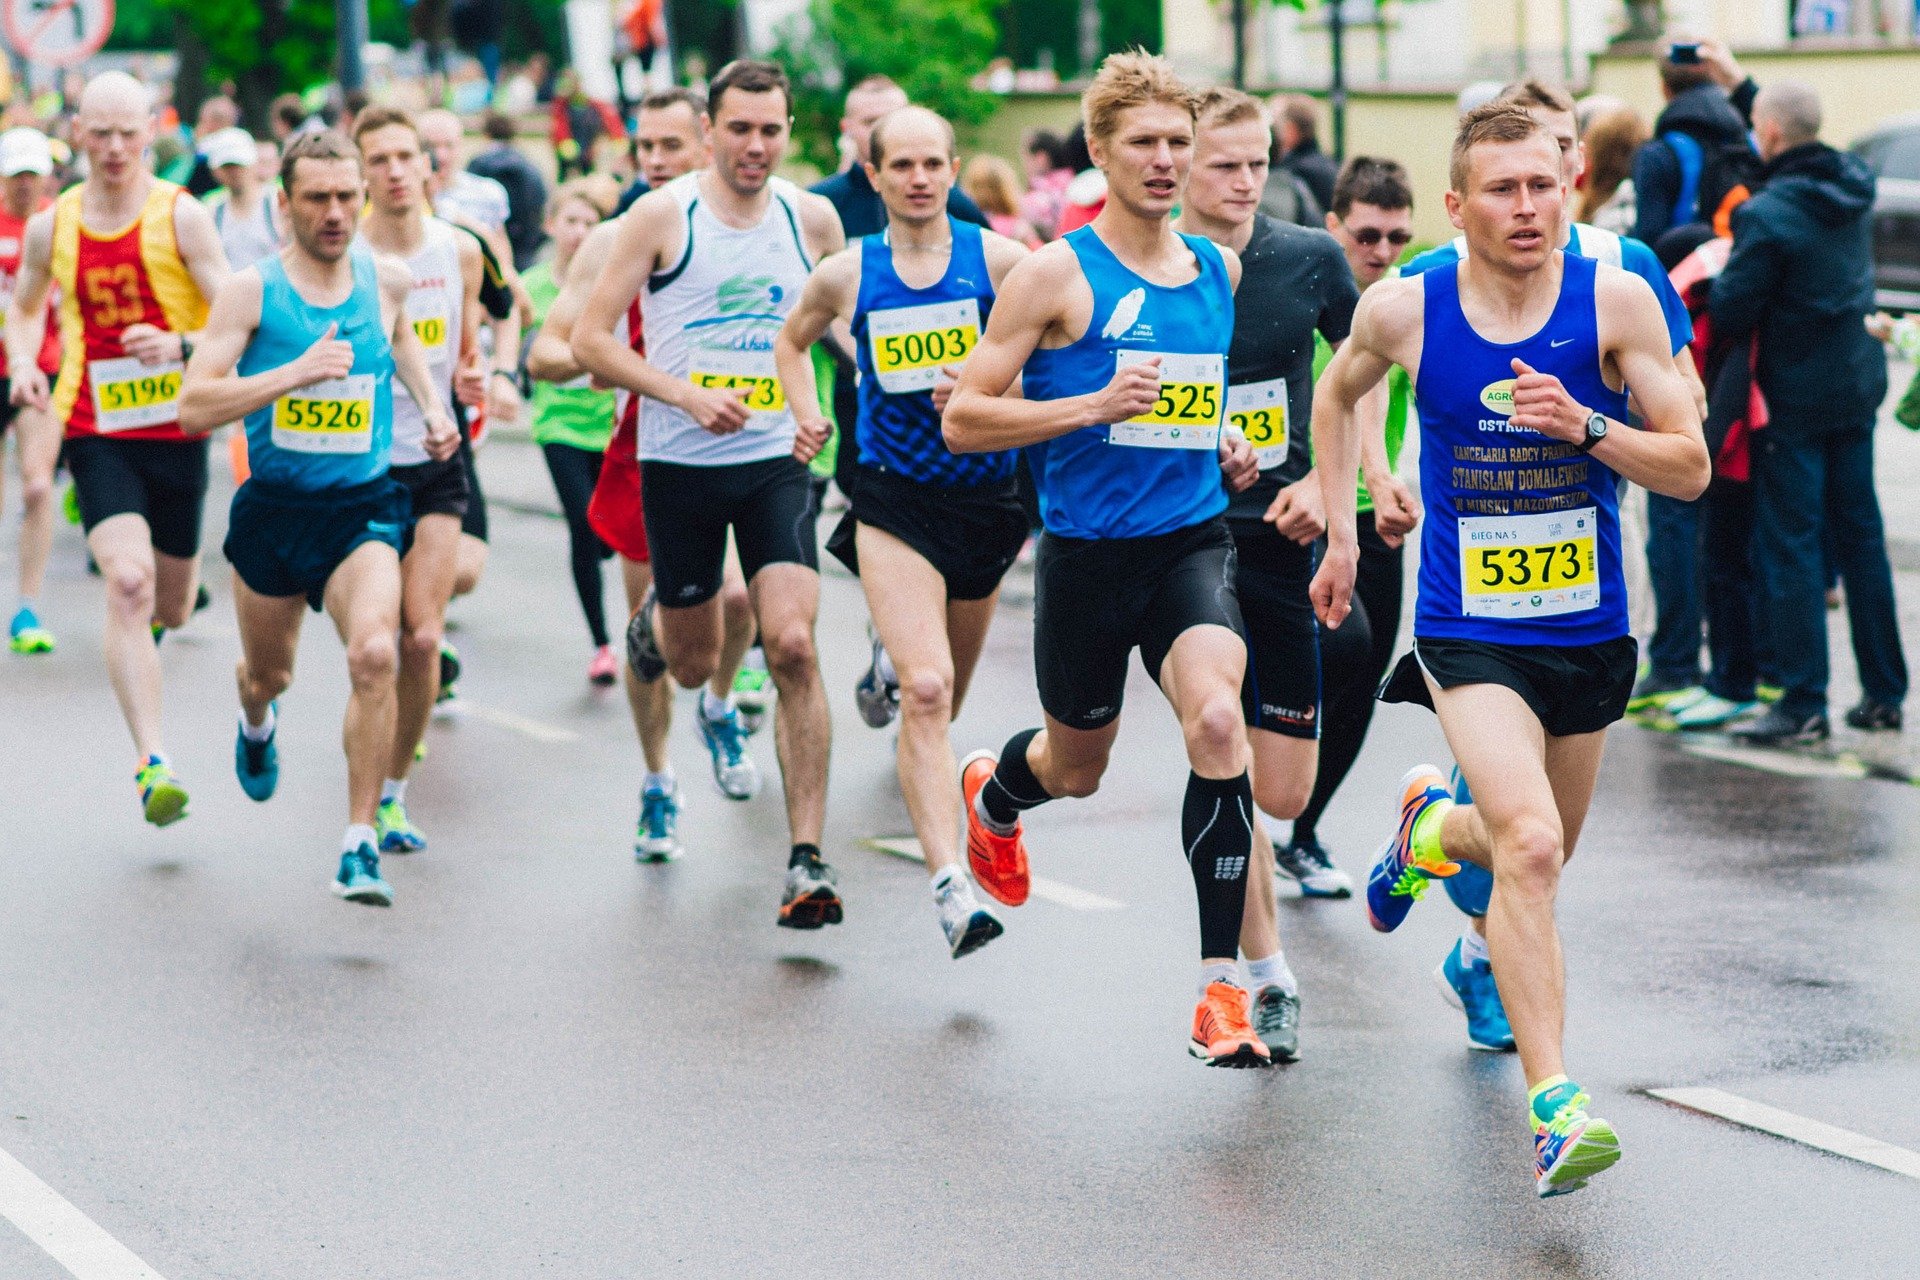 Photo of marathon runners | Photo: Pixabay